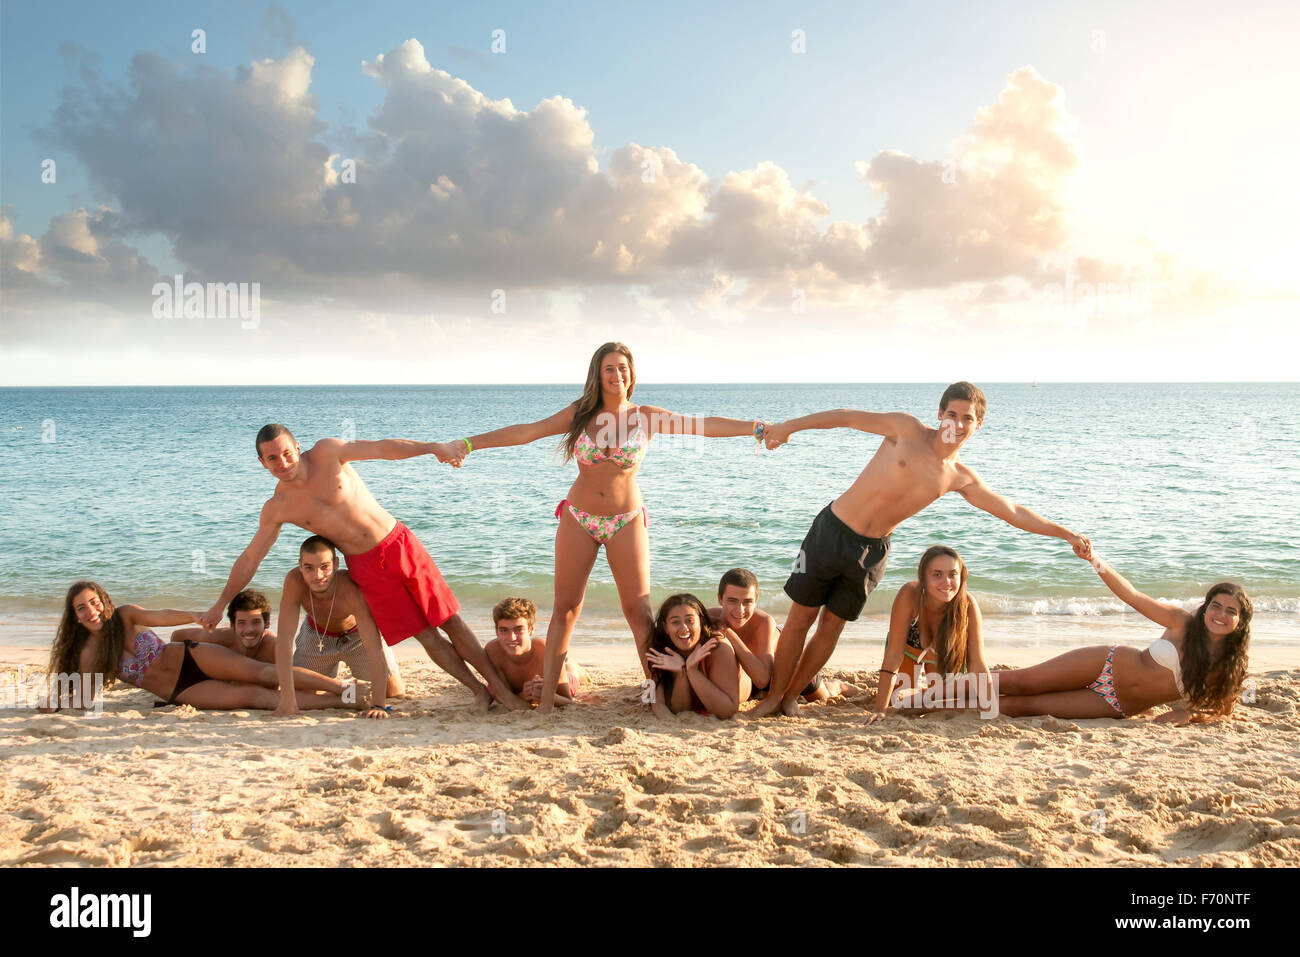 Grupo de adolescentes felices en la playa. Foto de stock